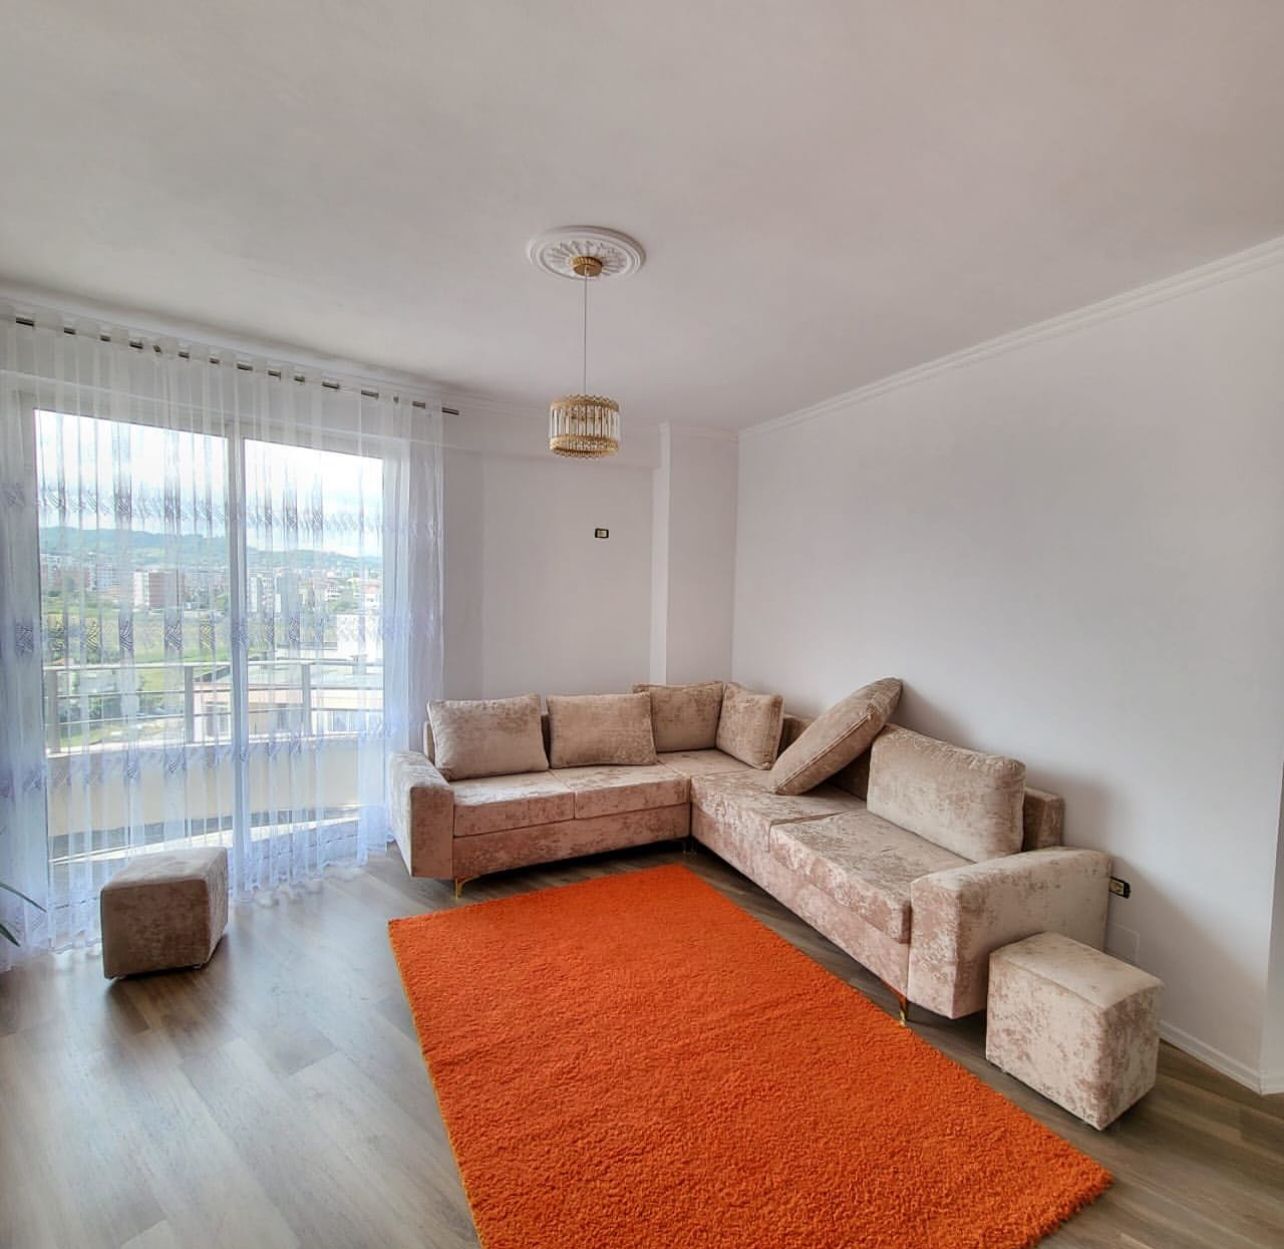 Foto e Apartment në shitje Astir, Tiranë